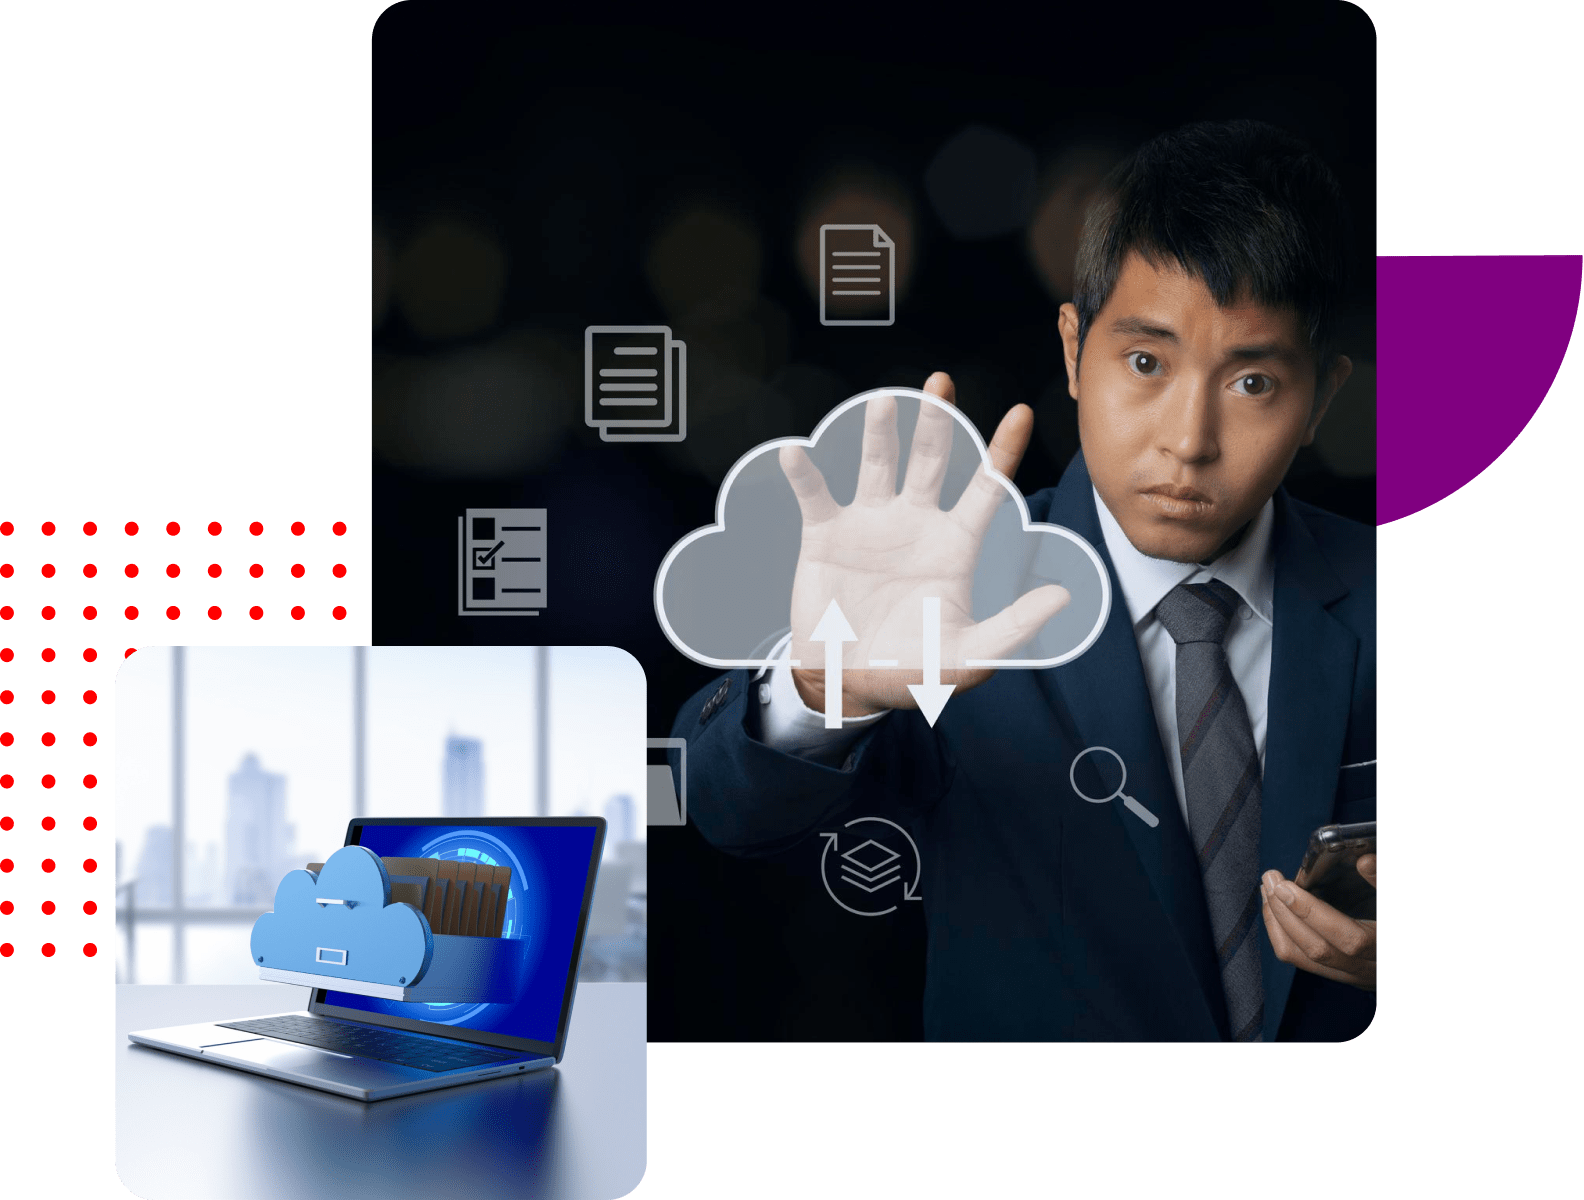 Cloud application development services